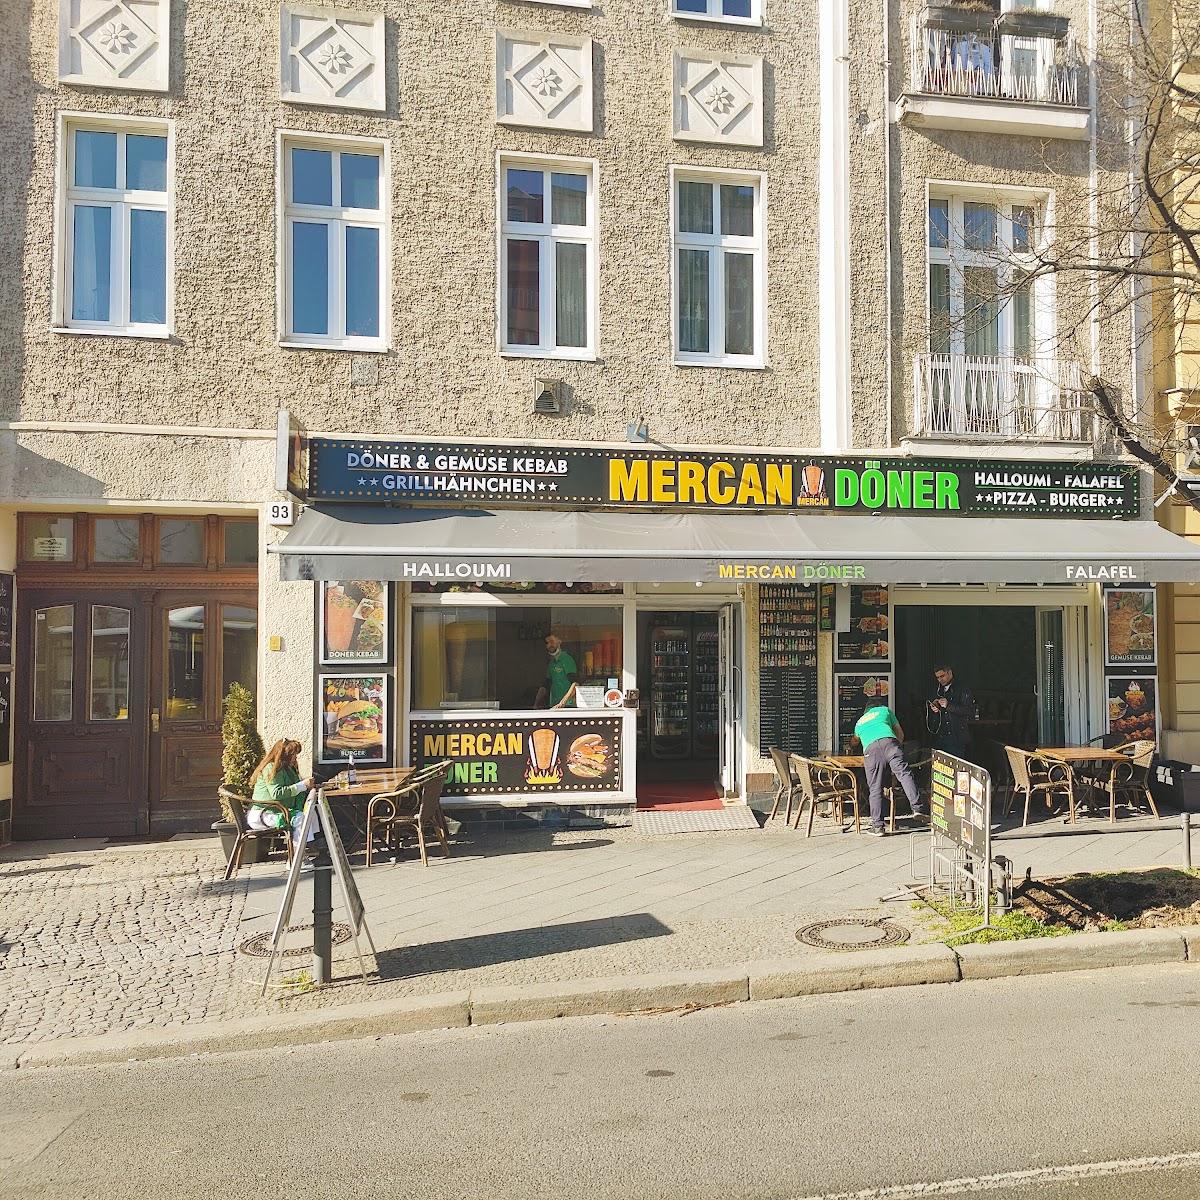 Restaurant "Mercan Döner" in Berlin